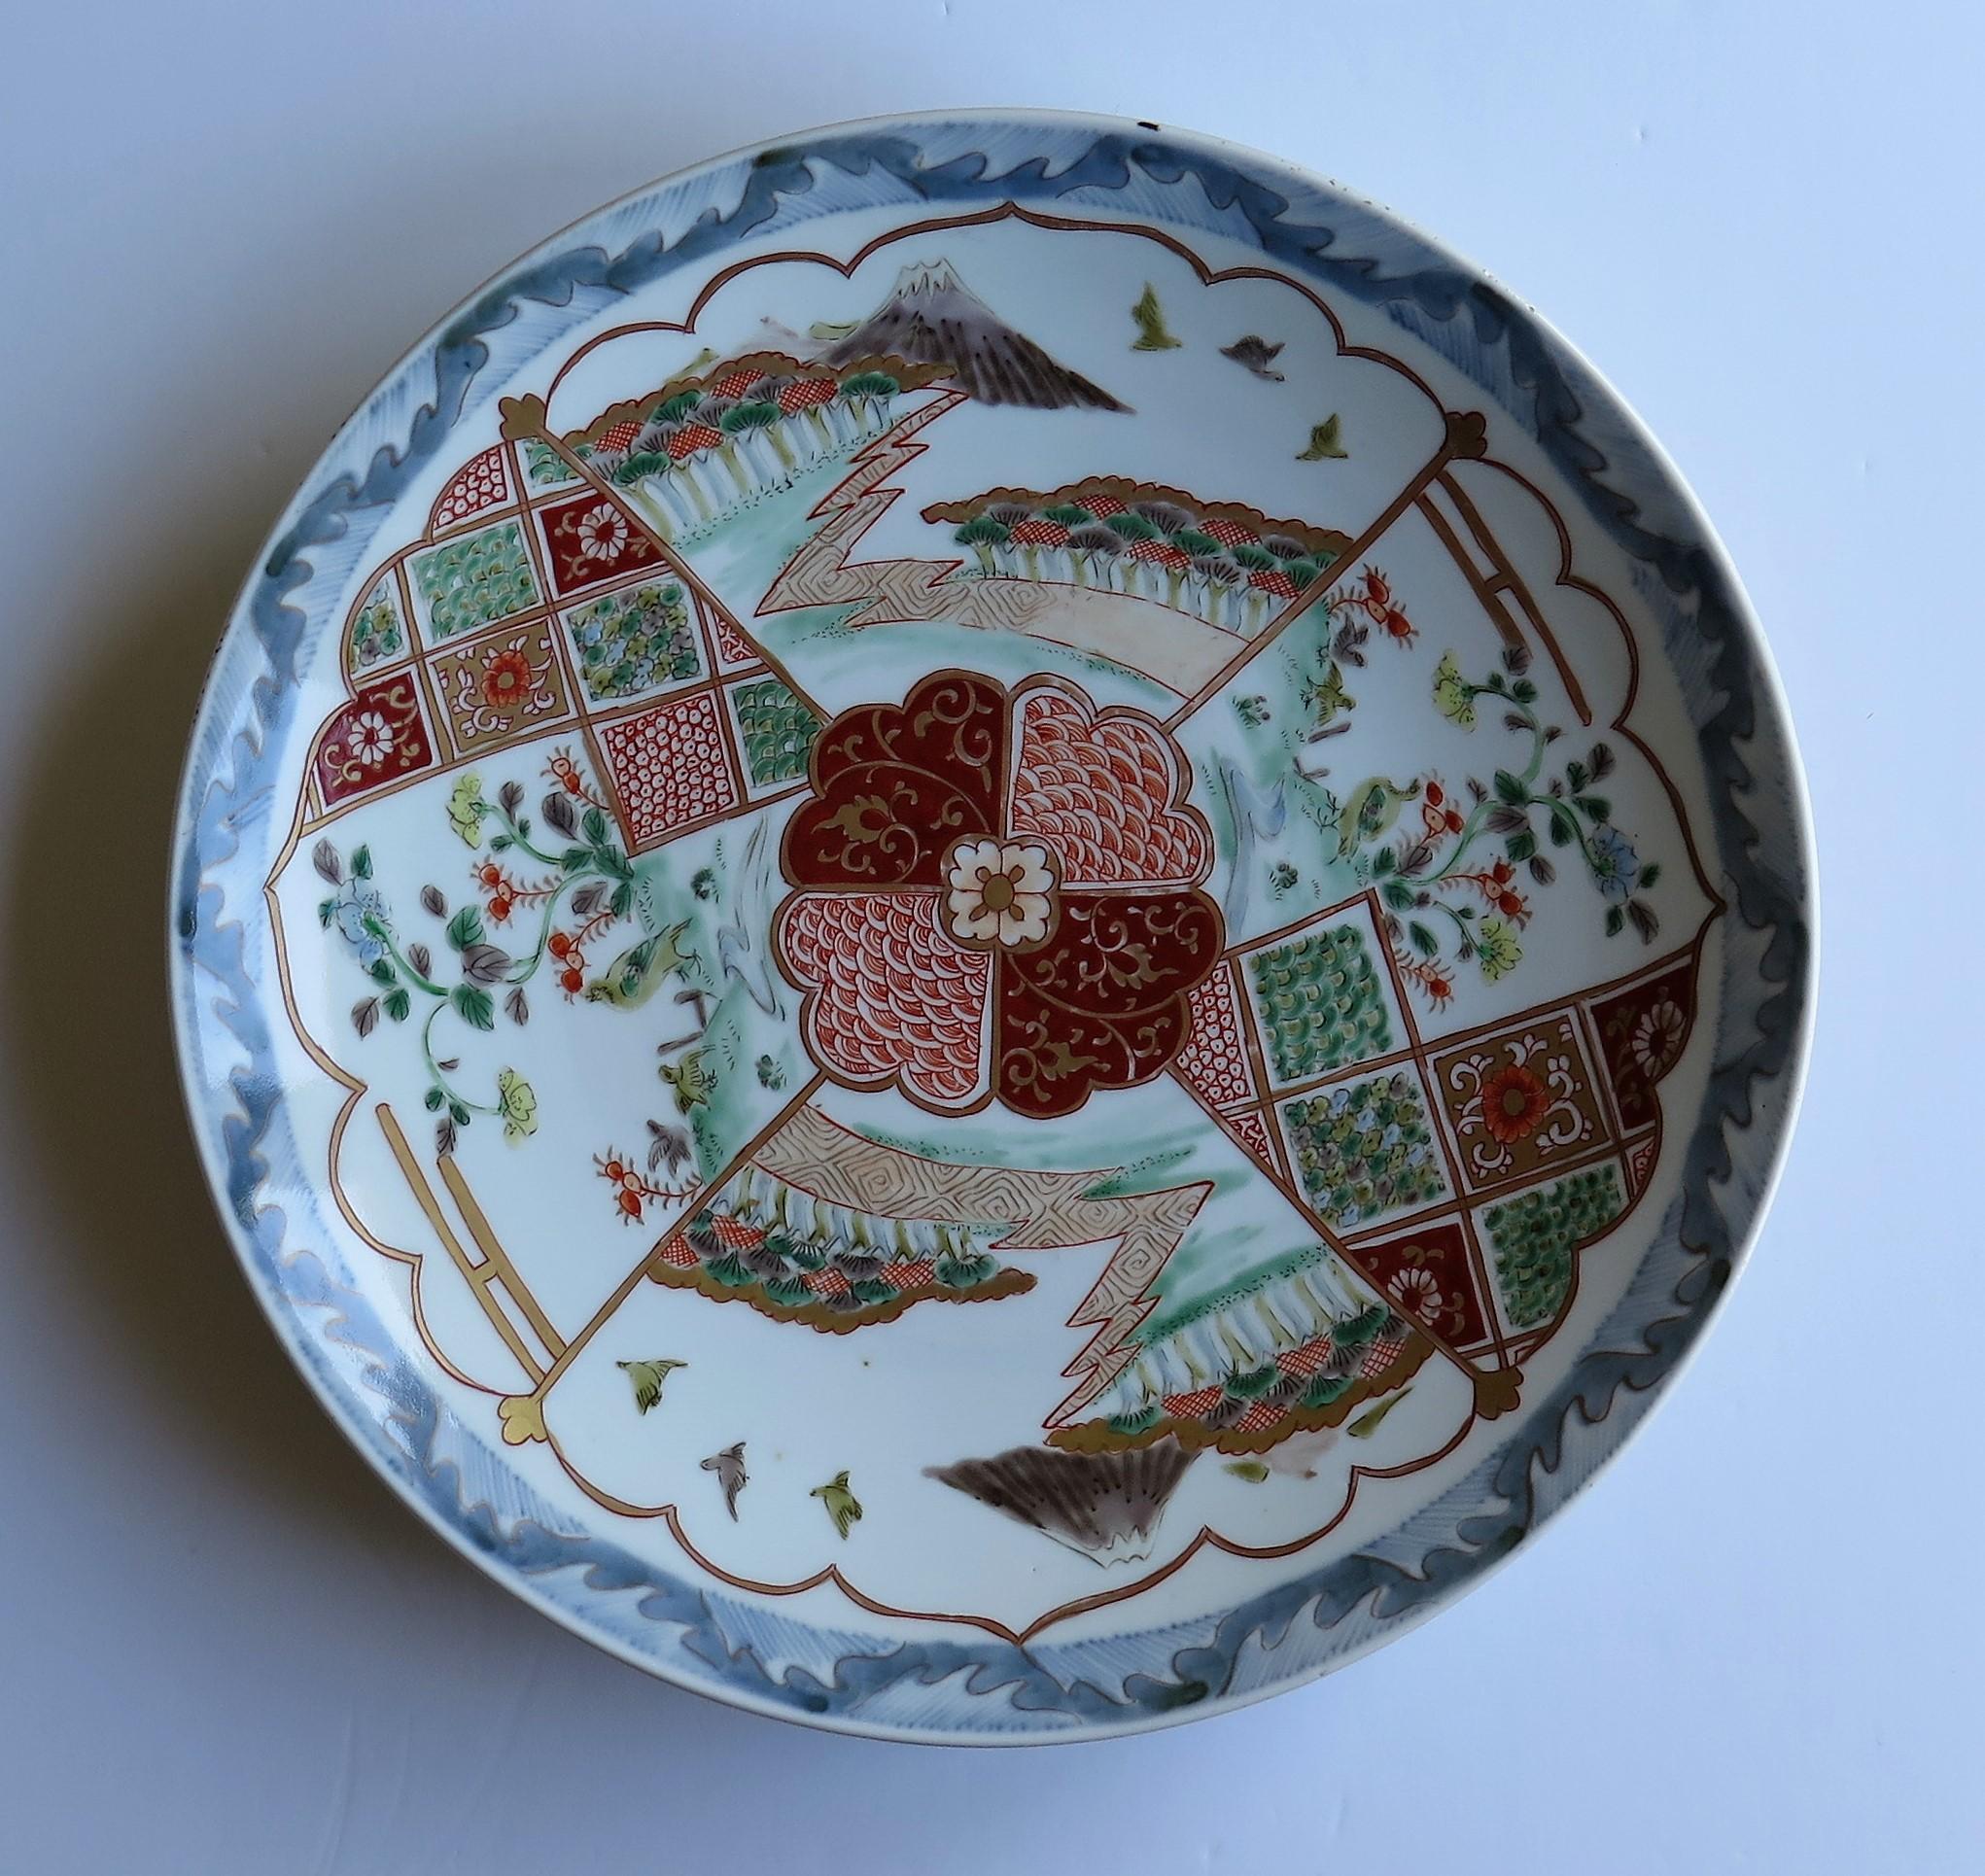 Dies ist ein hervorragendes Beispiel für einen japanischen Porzellan Charger oder sehr großen Teller mit einem fein handgemalten Design, aus der Edo-Zeit um 1840 oder möglicherweise früher.

Dieses Ladegerät ist ein feines, handbemaltes Exemplar,